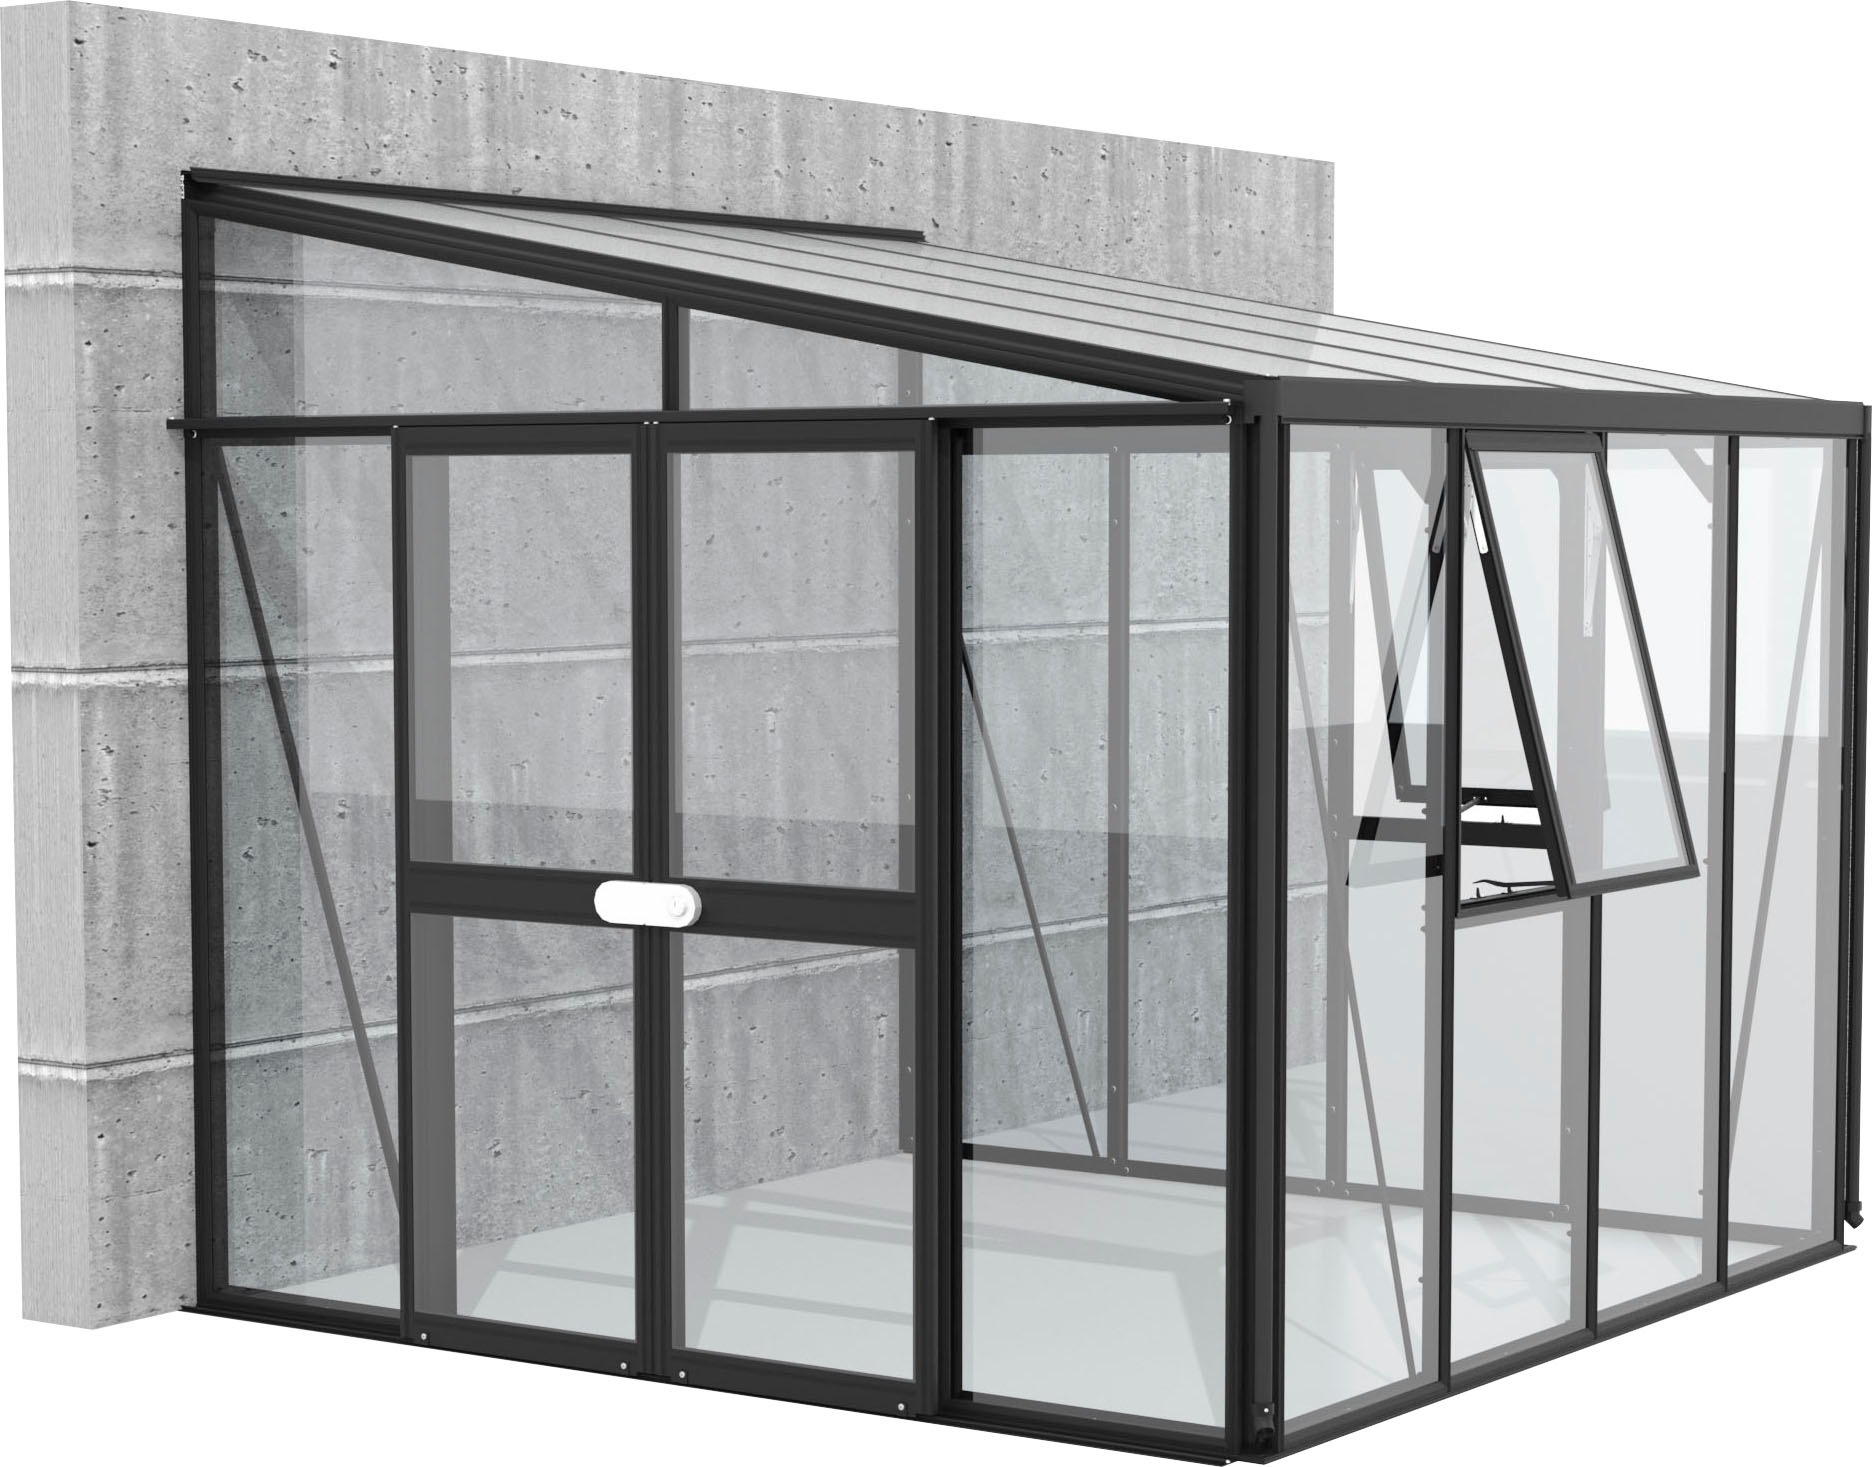 Vitavia Anlehngewächshaus »H_elena 7000«, Alu-Profile, 3 mm Sicherheitsglas, Dach 10 mm Hohlkammerplatten